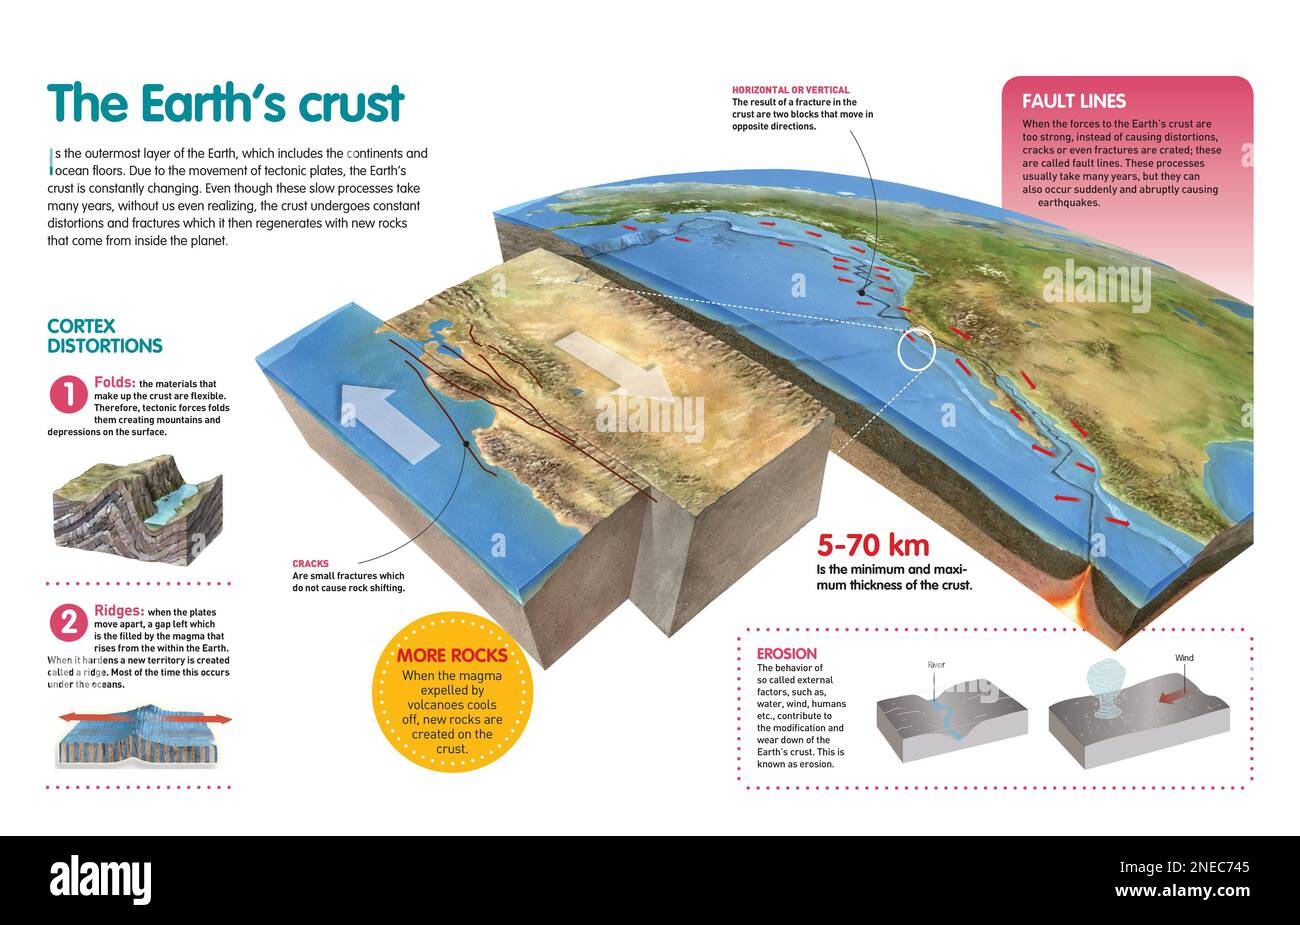 Infografik, die den veränderten Prozess der Erdkruste durch die Bewegung tektonischer Platten erklärt. [QuarkXPress (.qxp); Adobe InDesign (.indd); 4960x3188]. Stockfoto